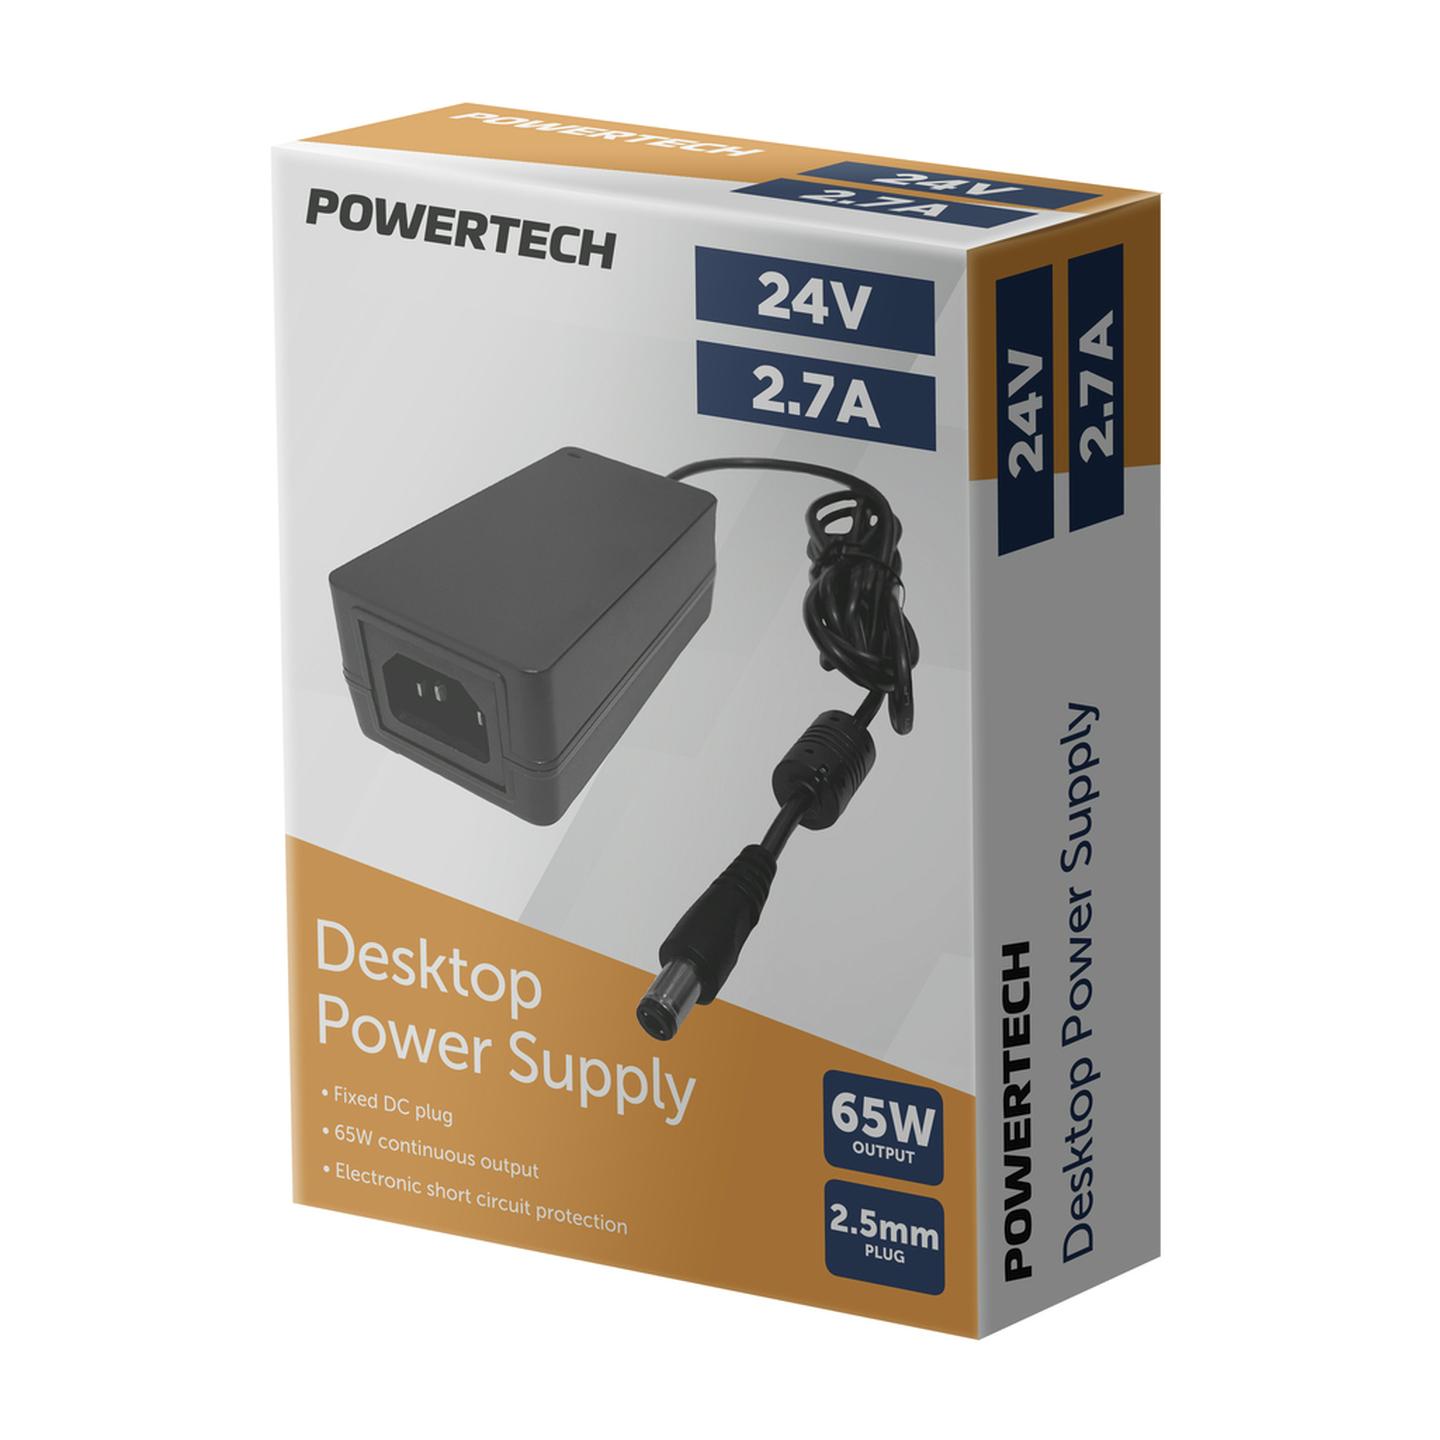 24V DC 2.7A Desktop Power Supply 2.5mm DC Plug